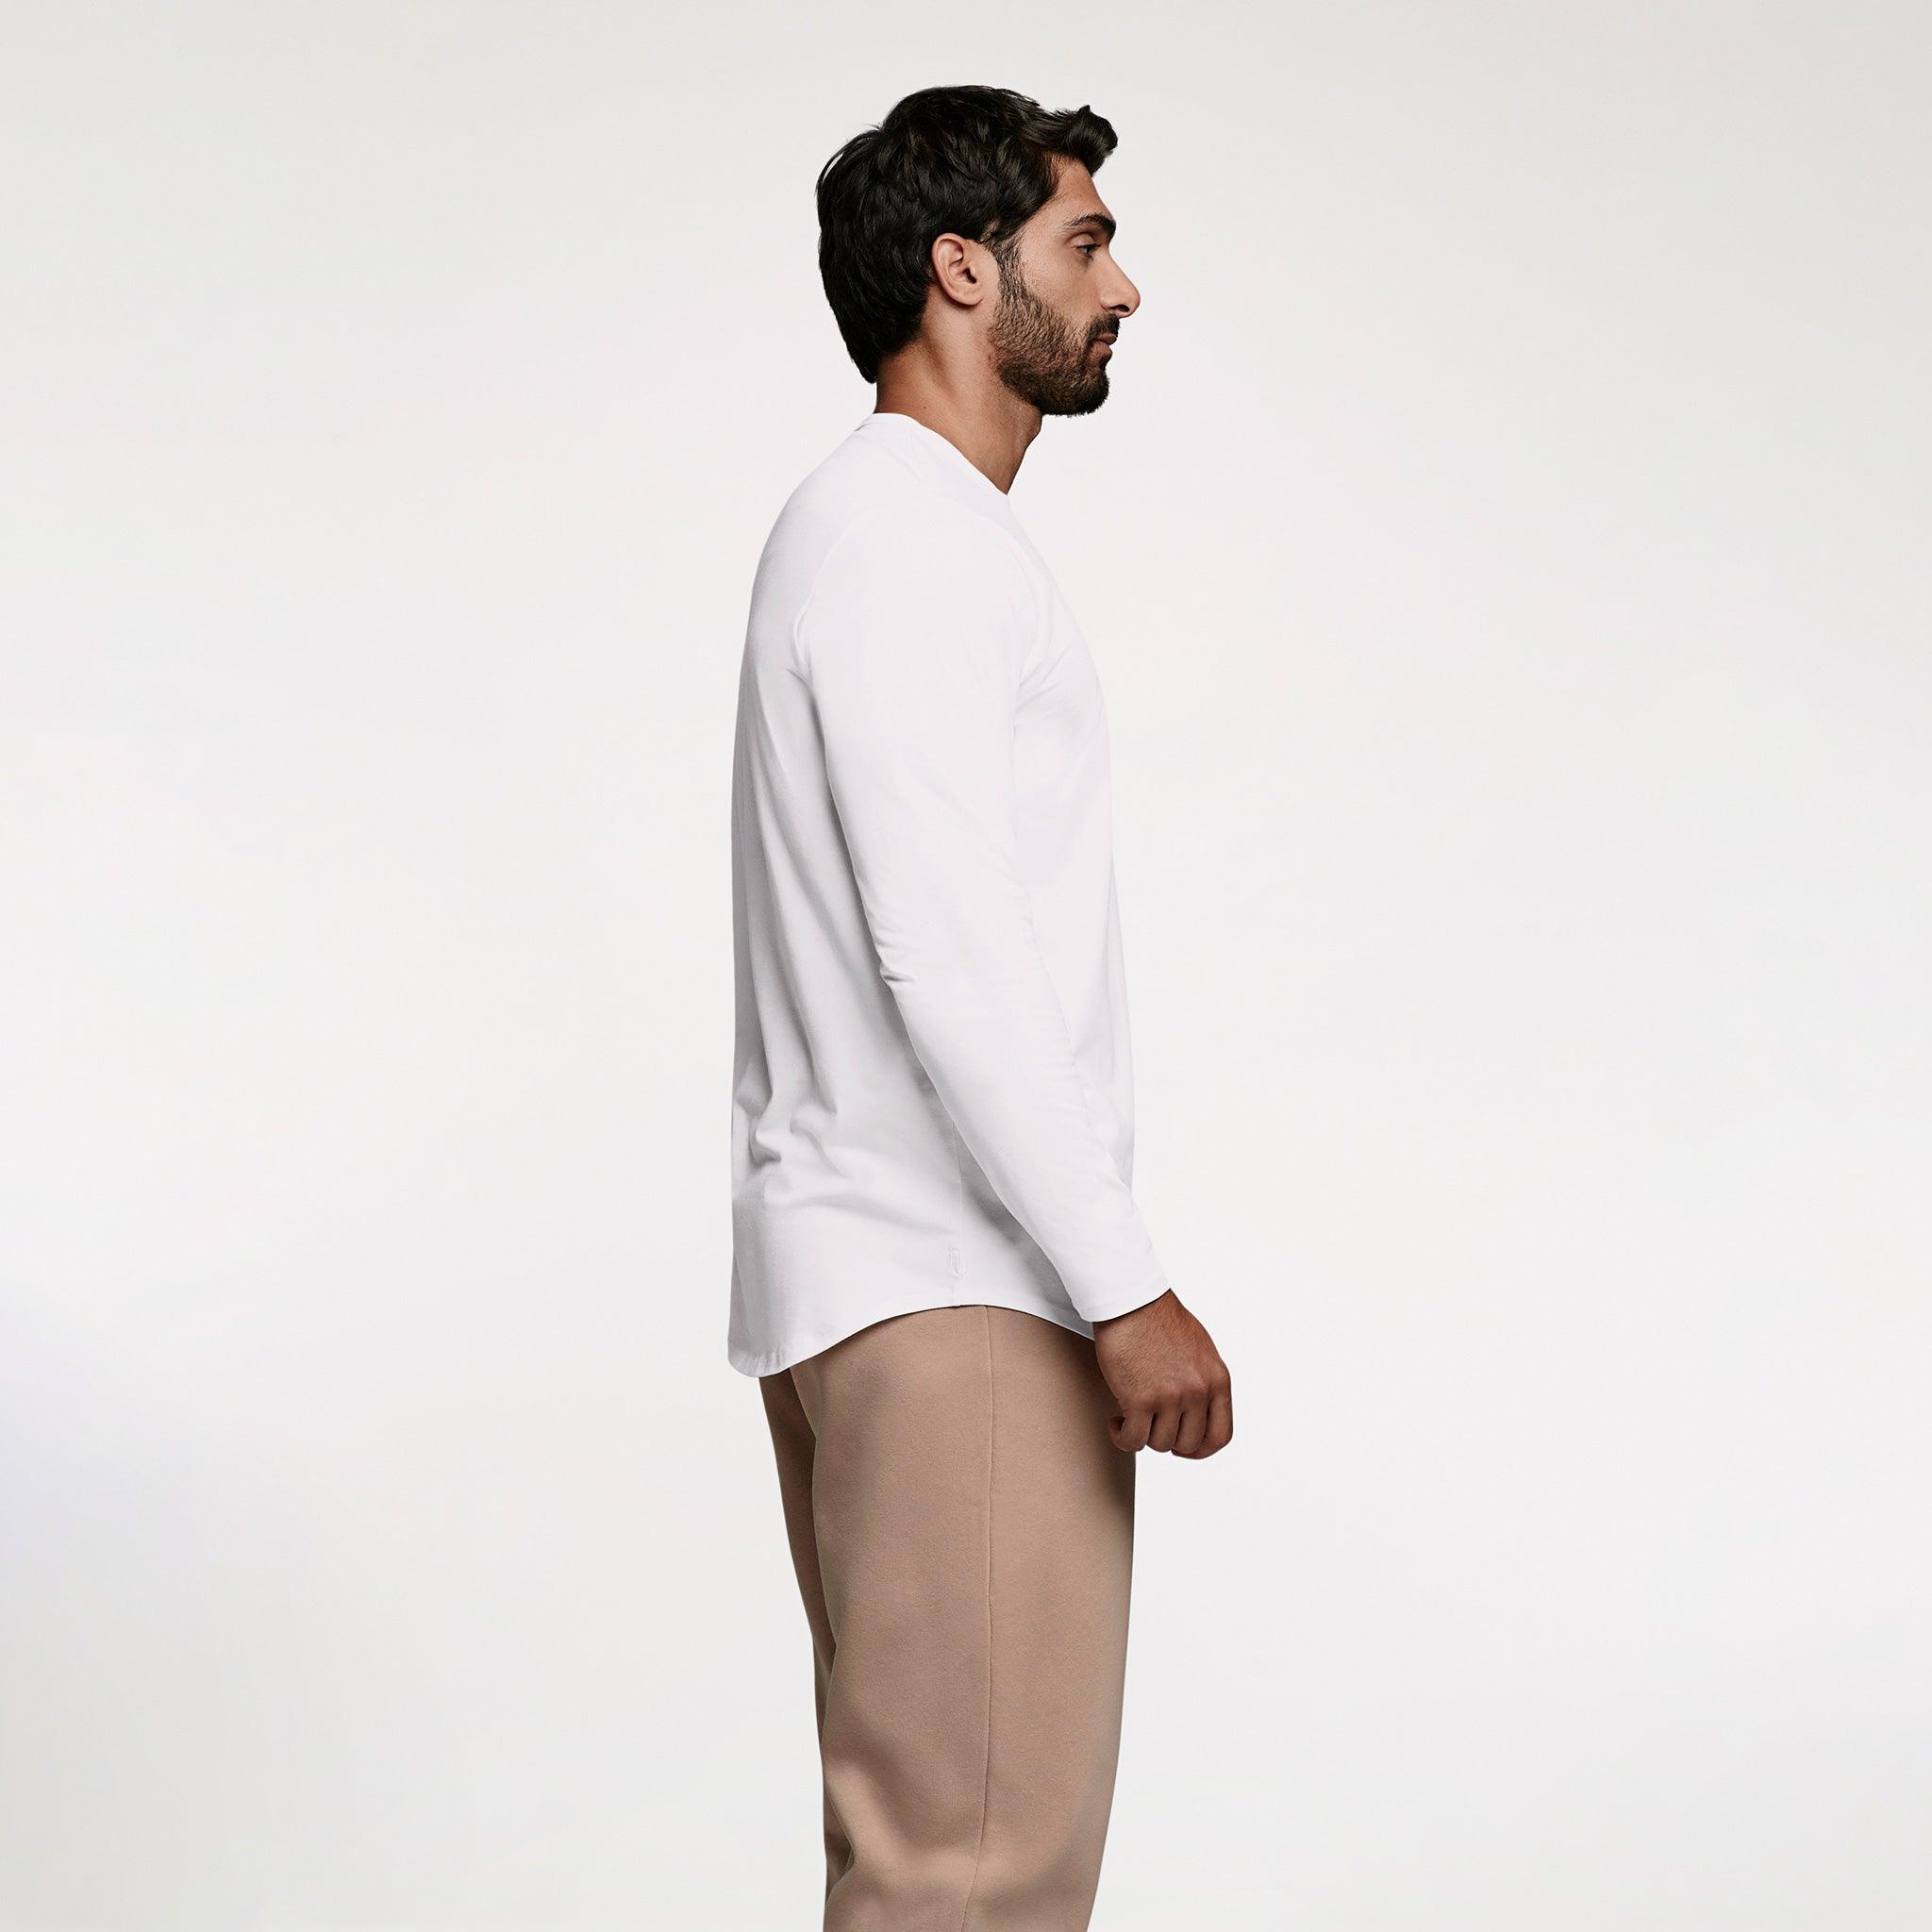 Men's Long Sleeve Curved Hem T-Shirt | White